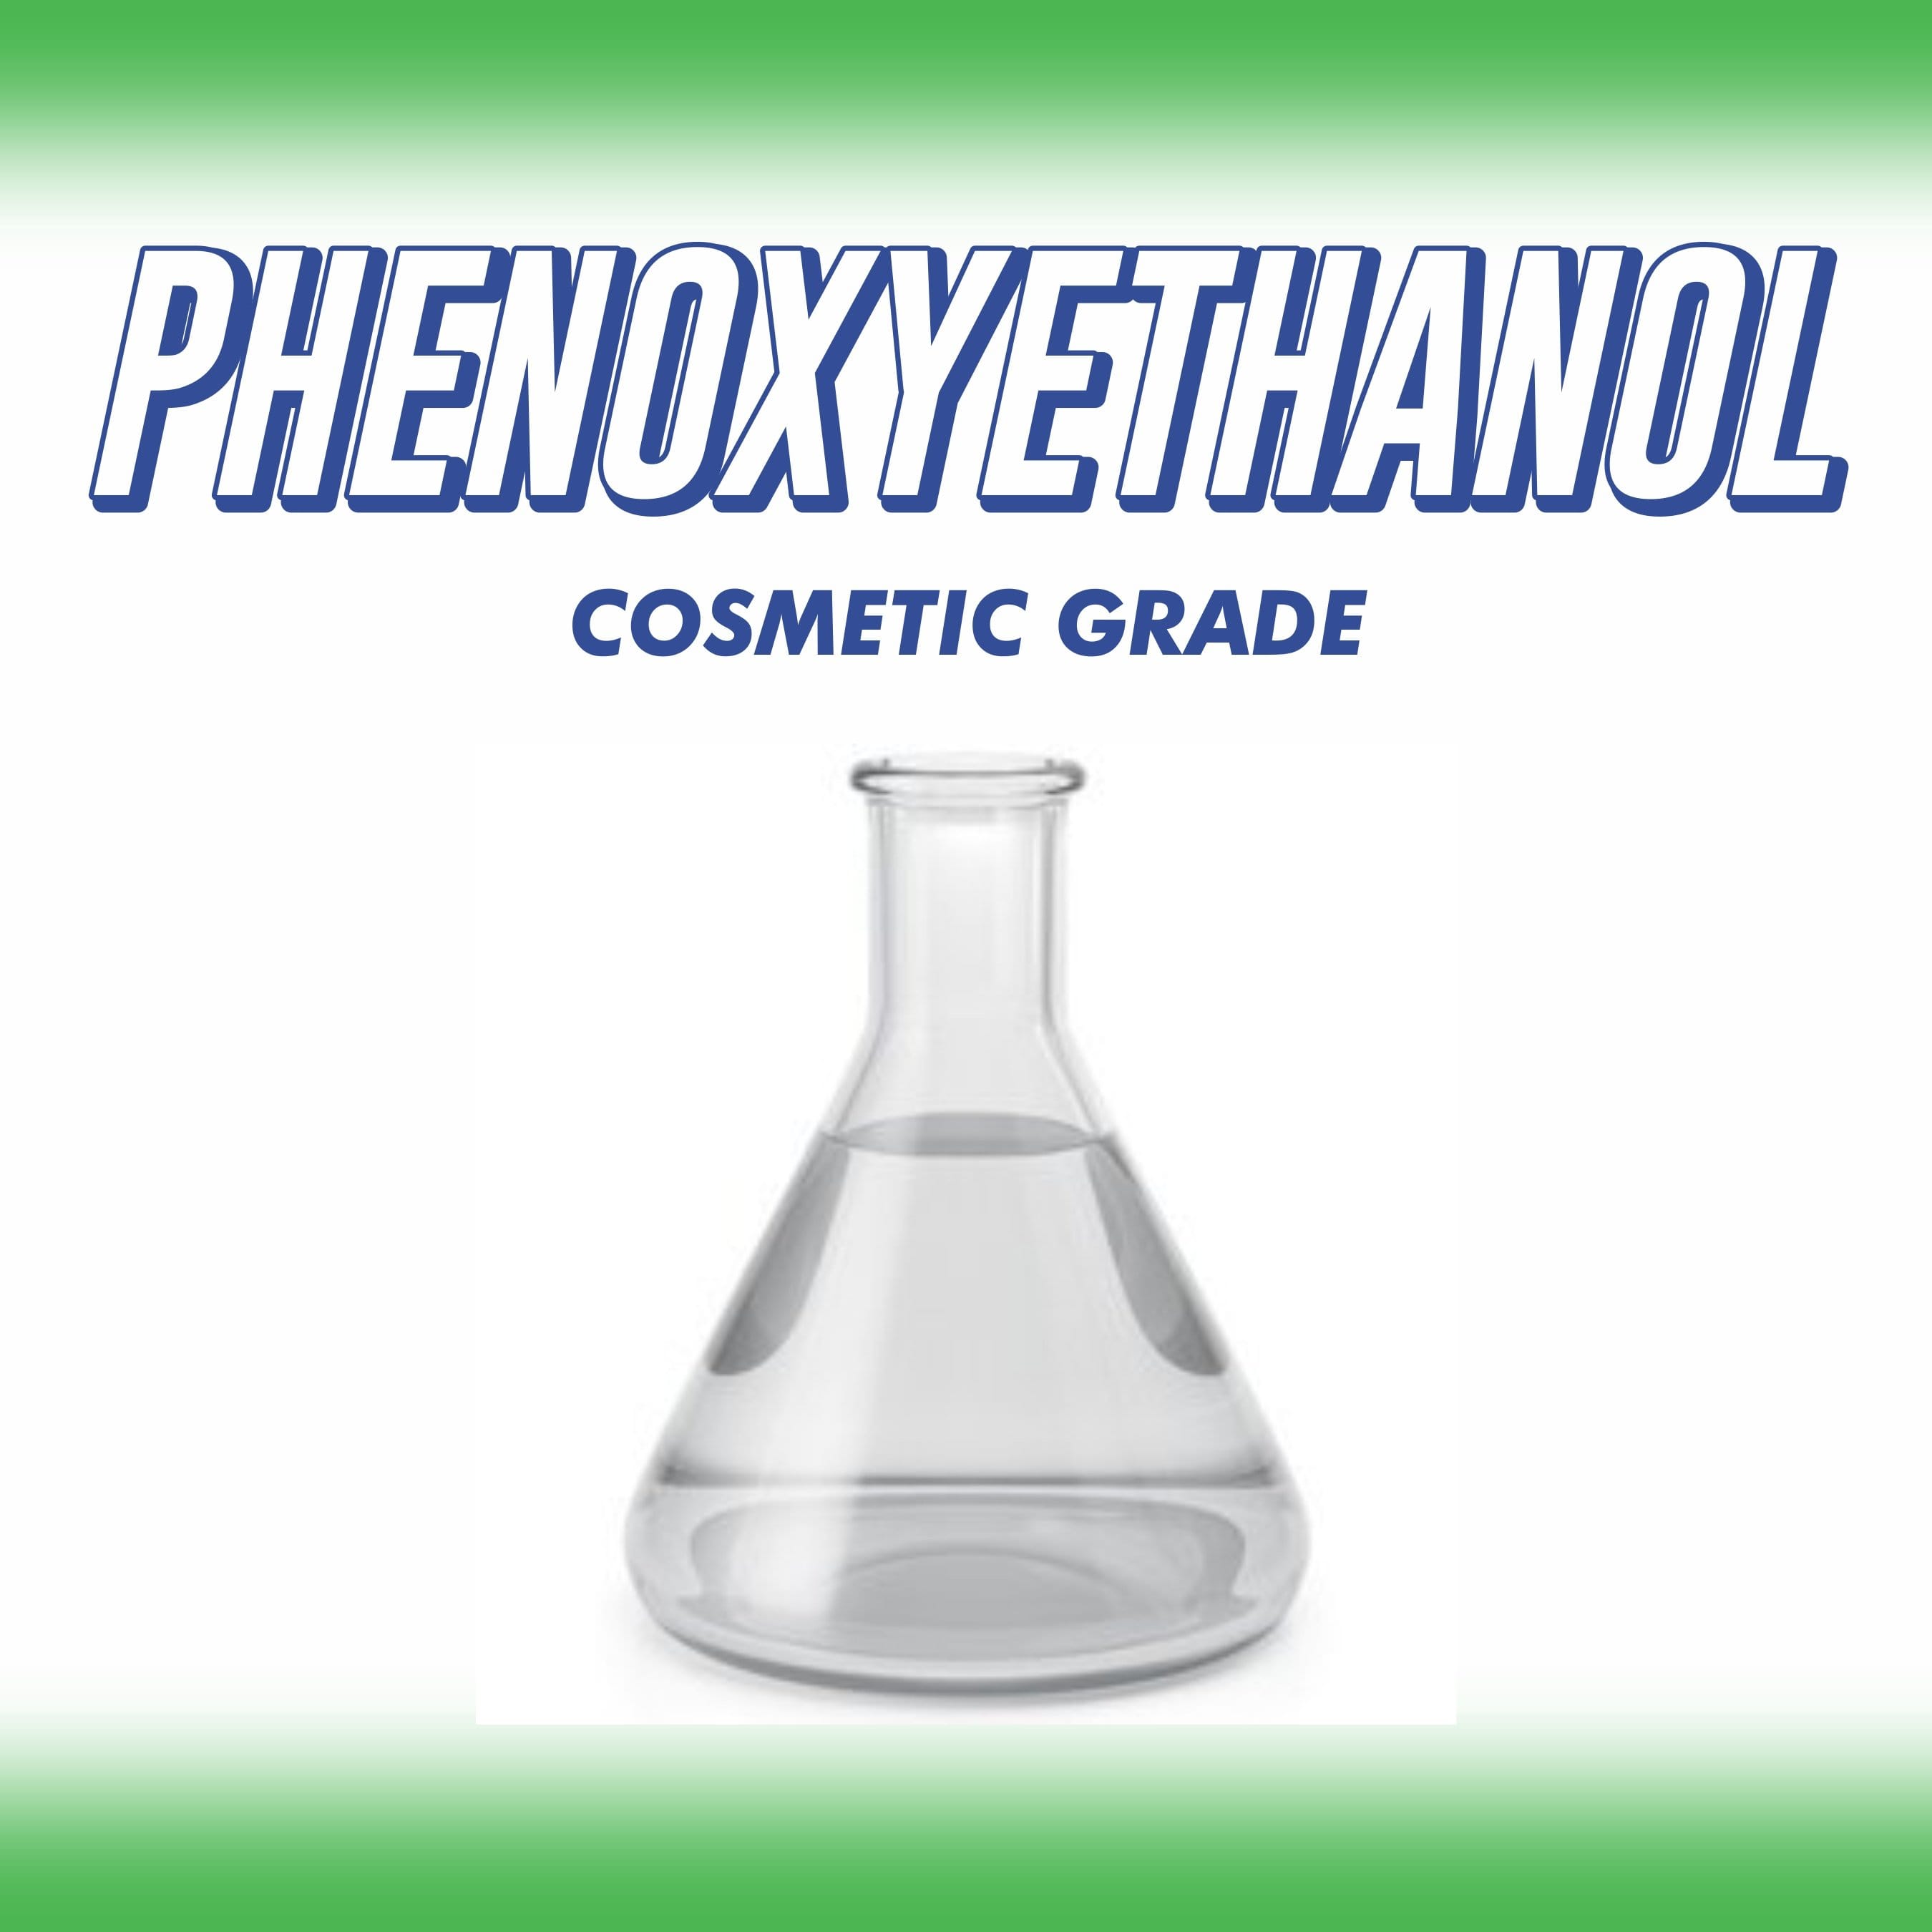 is phenoxyethanol safe for skin